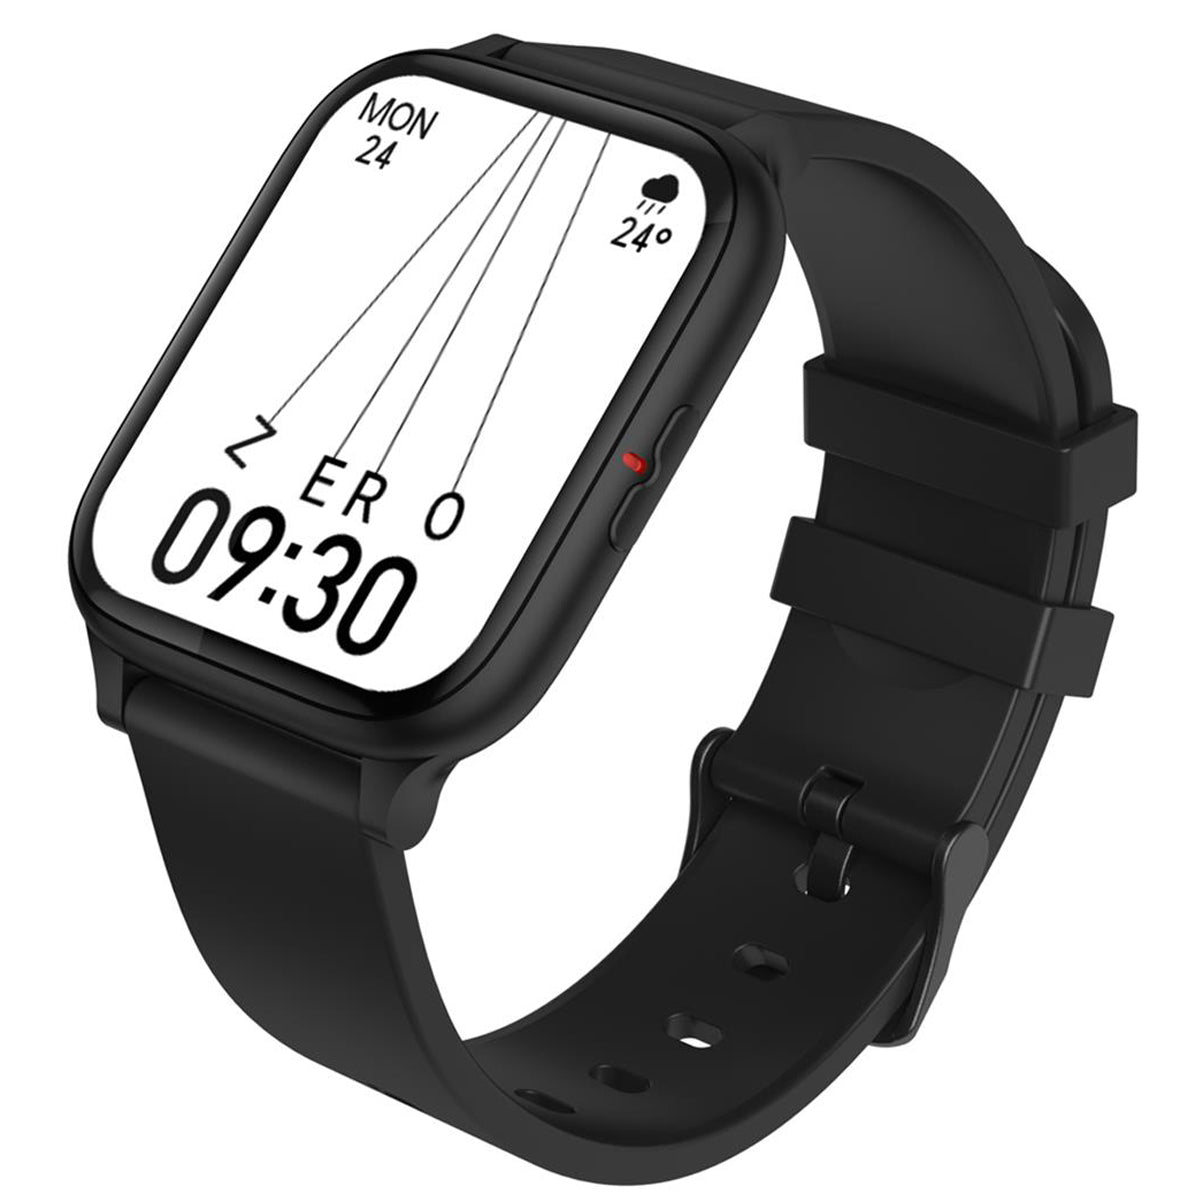 Fralugio Reloj Inteligente Smart Watch Sw6 Full Touch Ips Hd